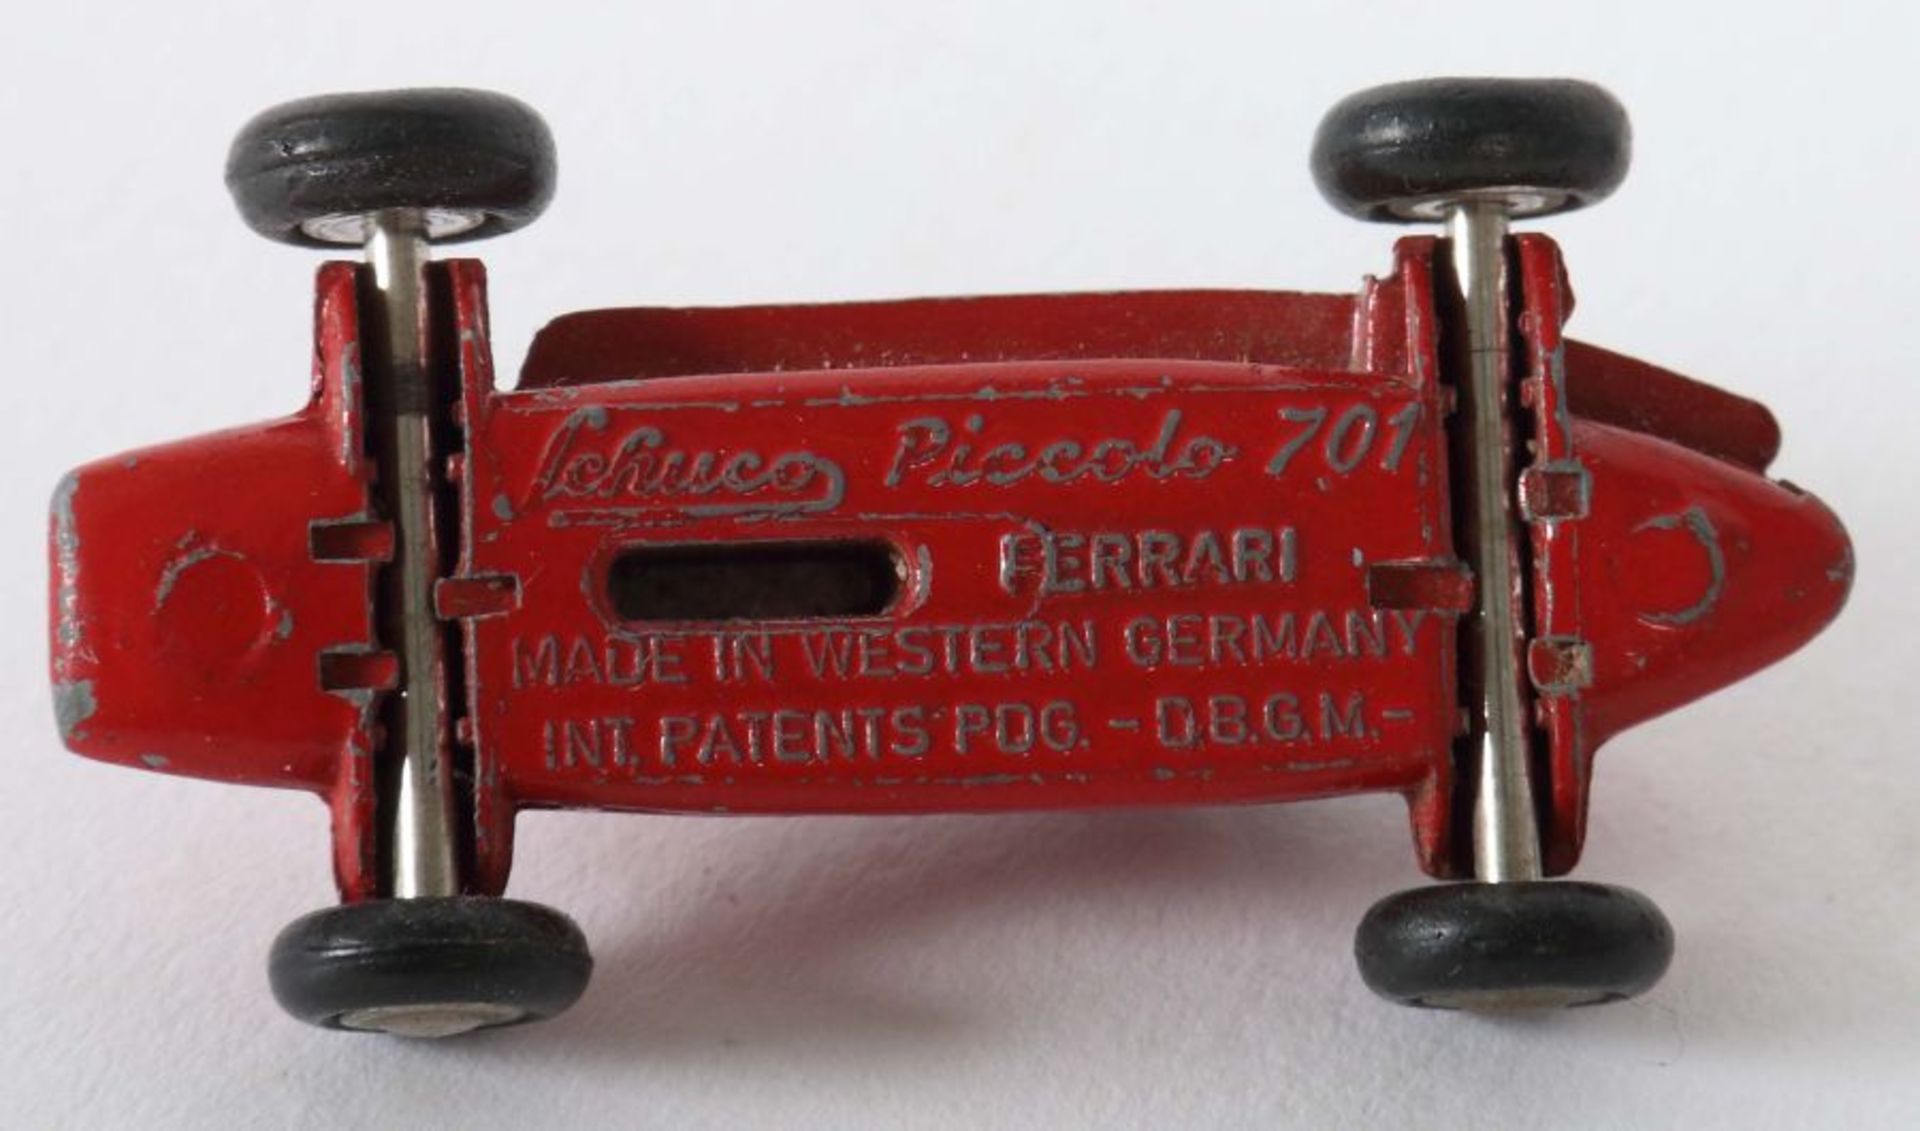 3 Rennwägen Schuco Piccolo 701, Ferarri, BZ 1957-69, Metall, L: 5 cm; 1 x Schuco Piccolo 703, - Bild 2 aus 2